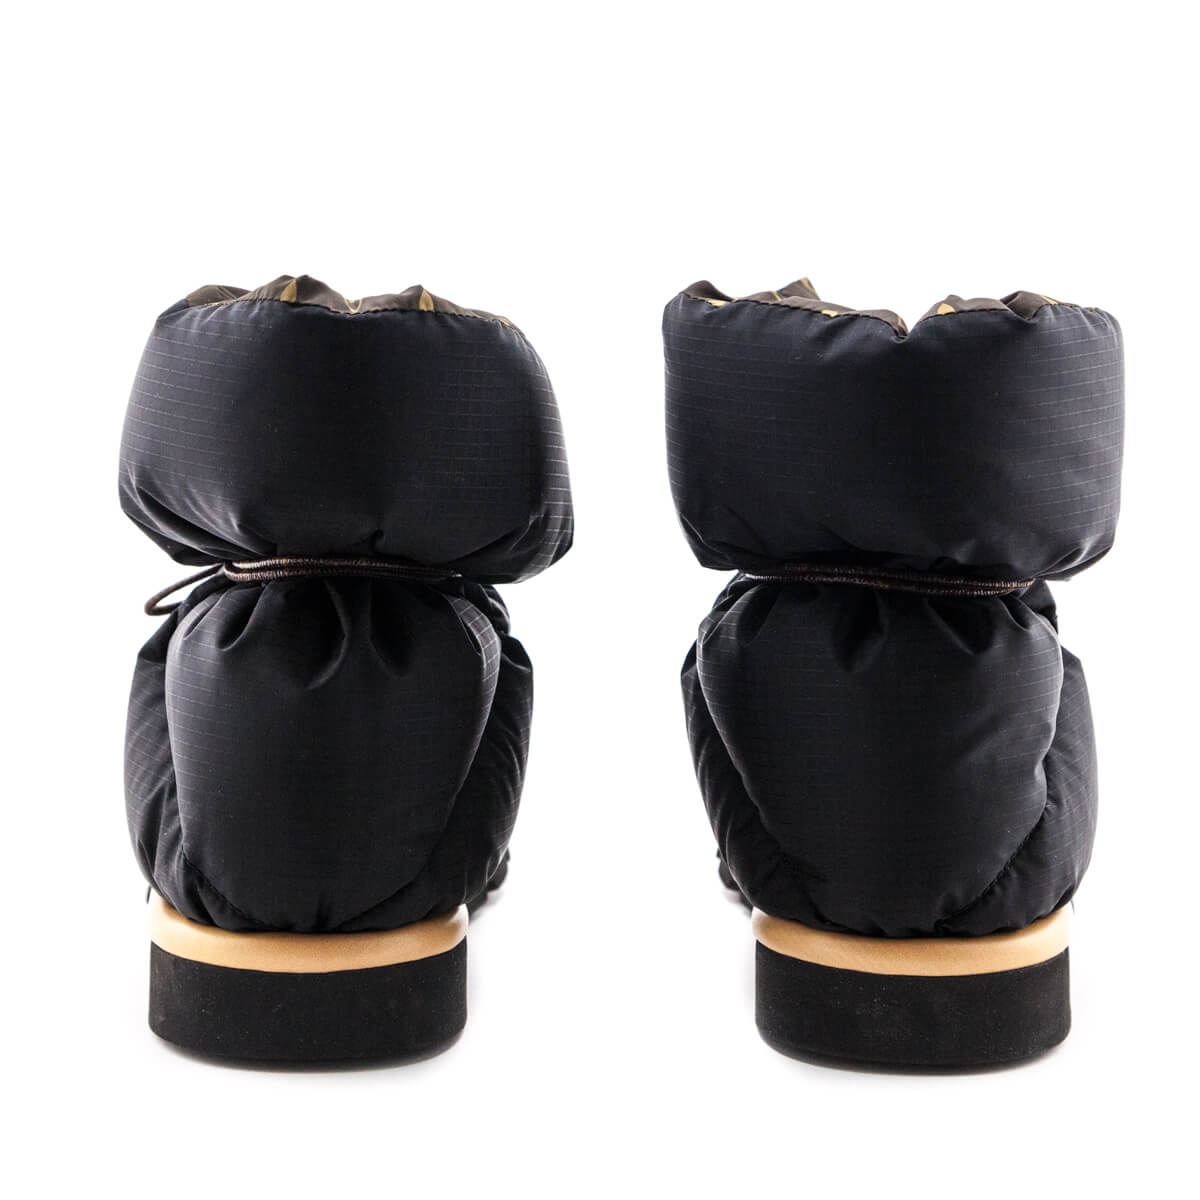 Louis Vuitton Women's Pillow Comfort Ankle Boots Nylon Black 2348493